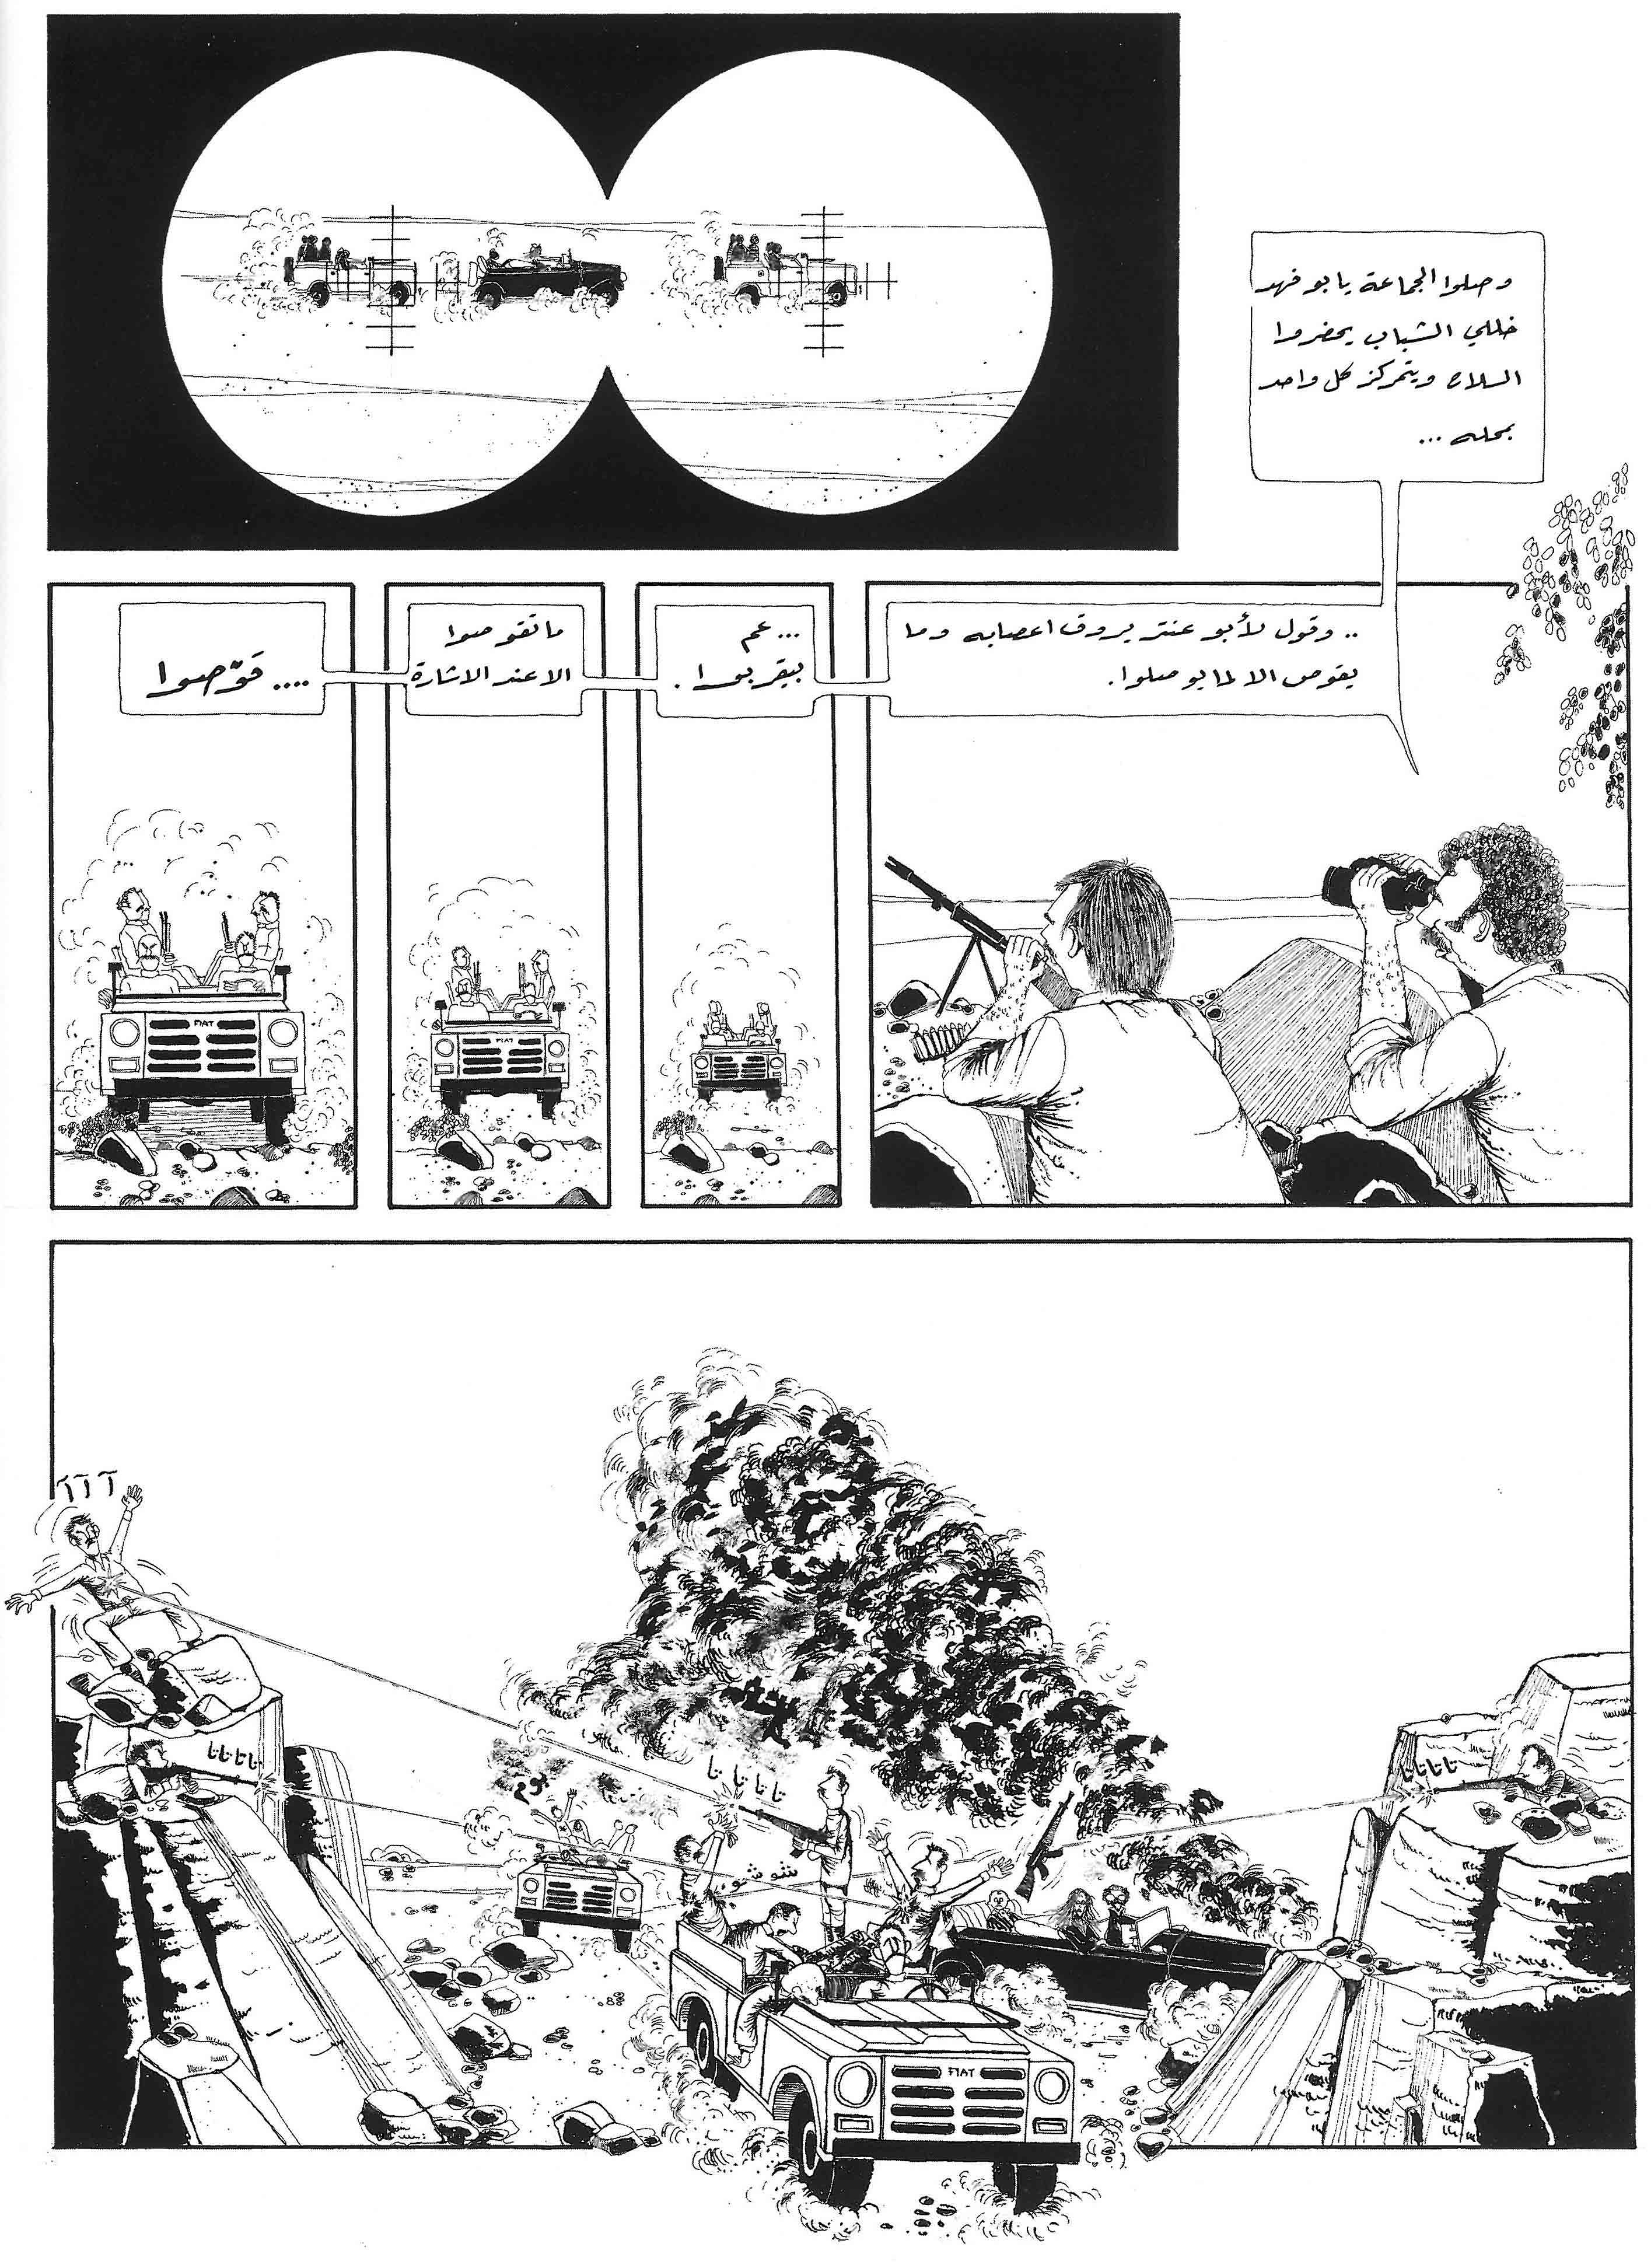 works_on_comics_in_Lebanon-6.jpg